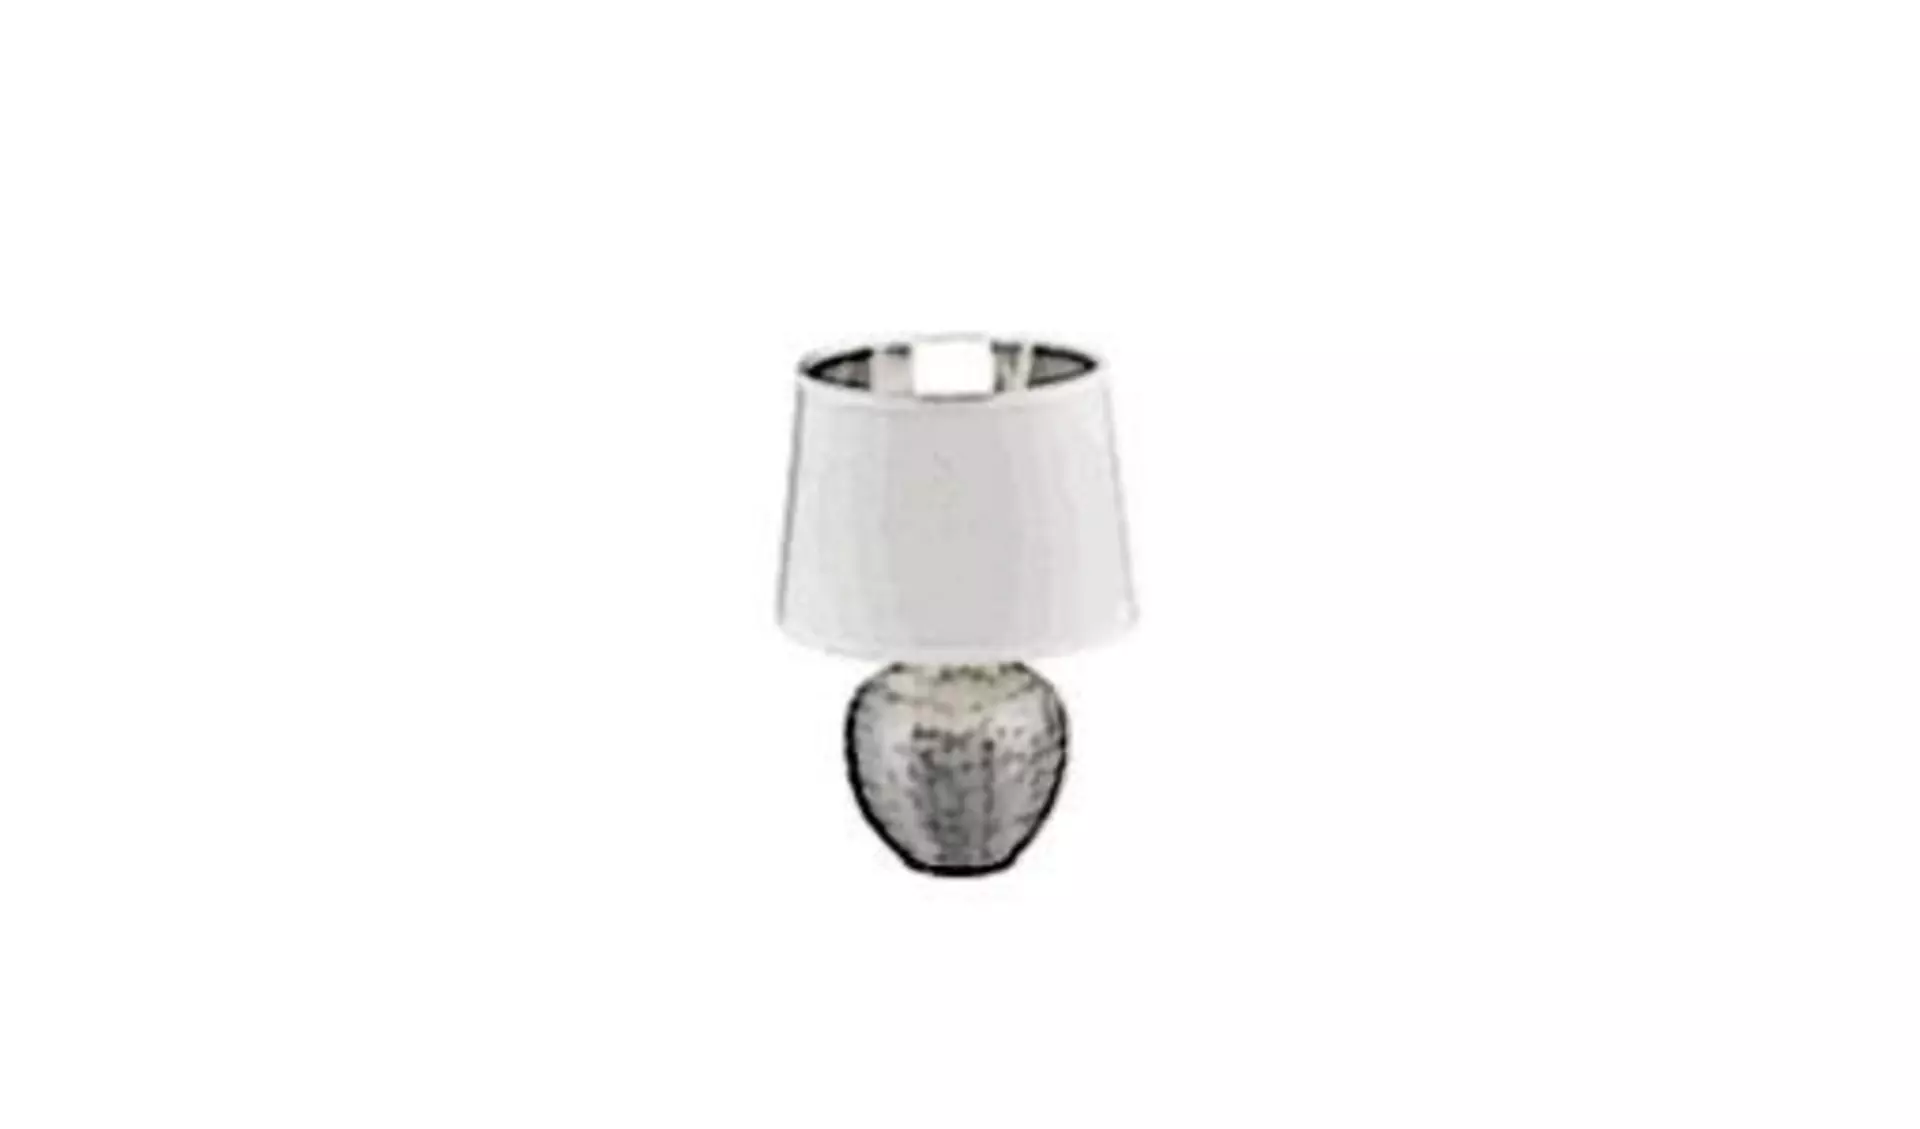 Sinnbild für alle Tischlampen ist ein kugelförmiger Fuß aus Edelstahl und darauf der typische weiße Lampenschirm.